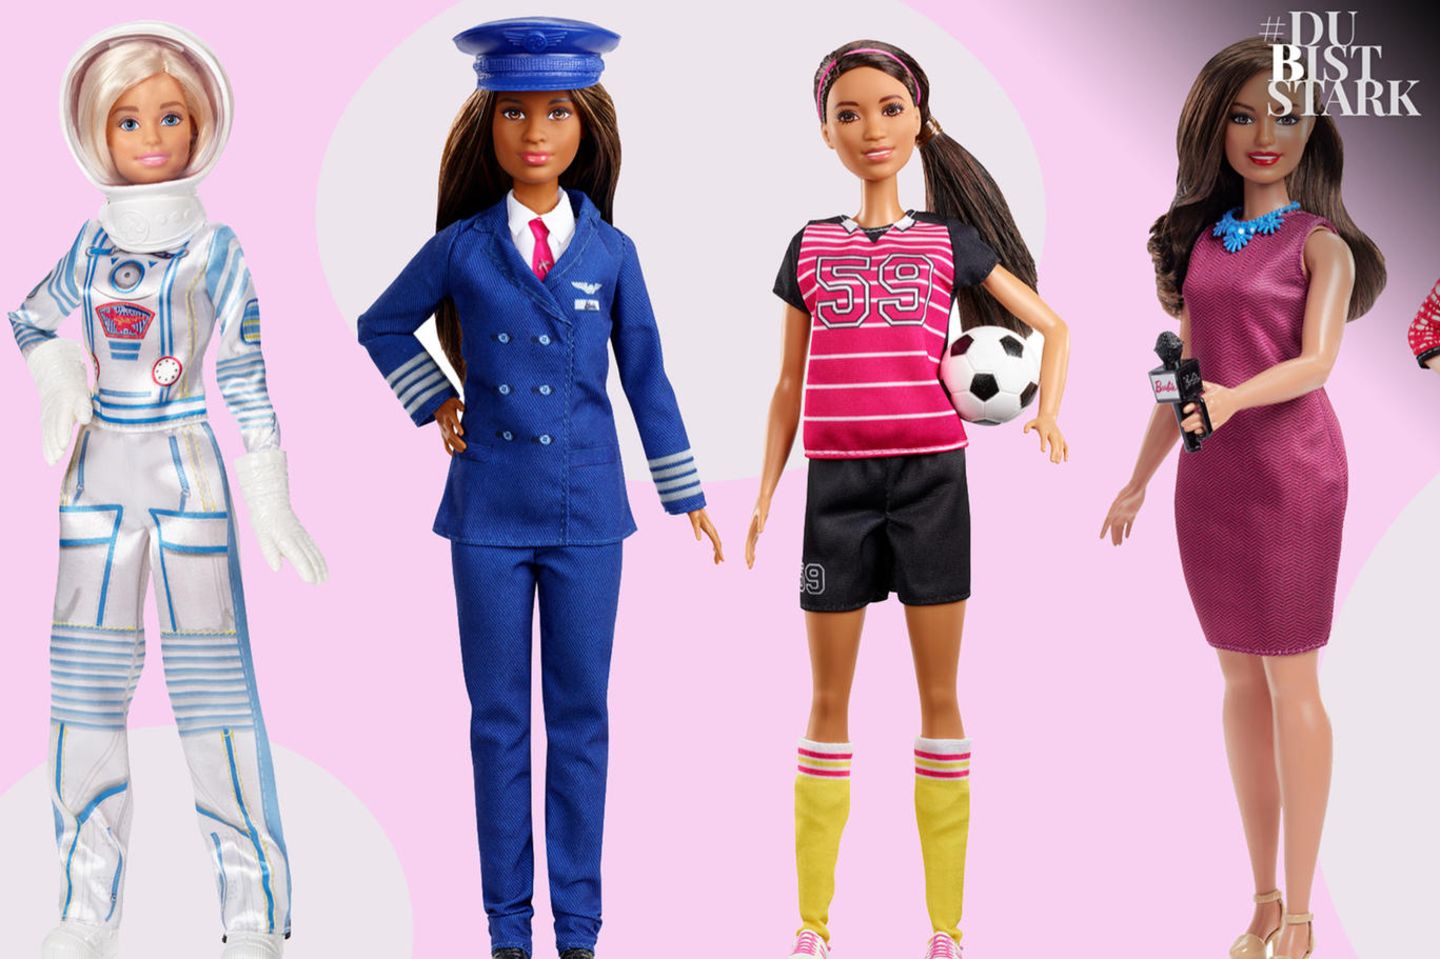 Barbie als Powerfrau